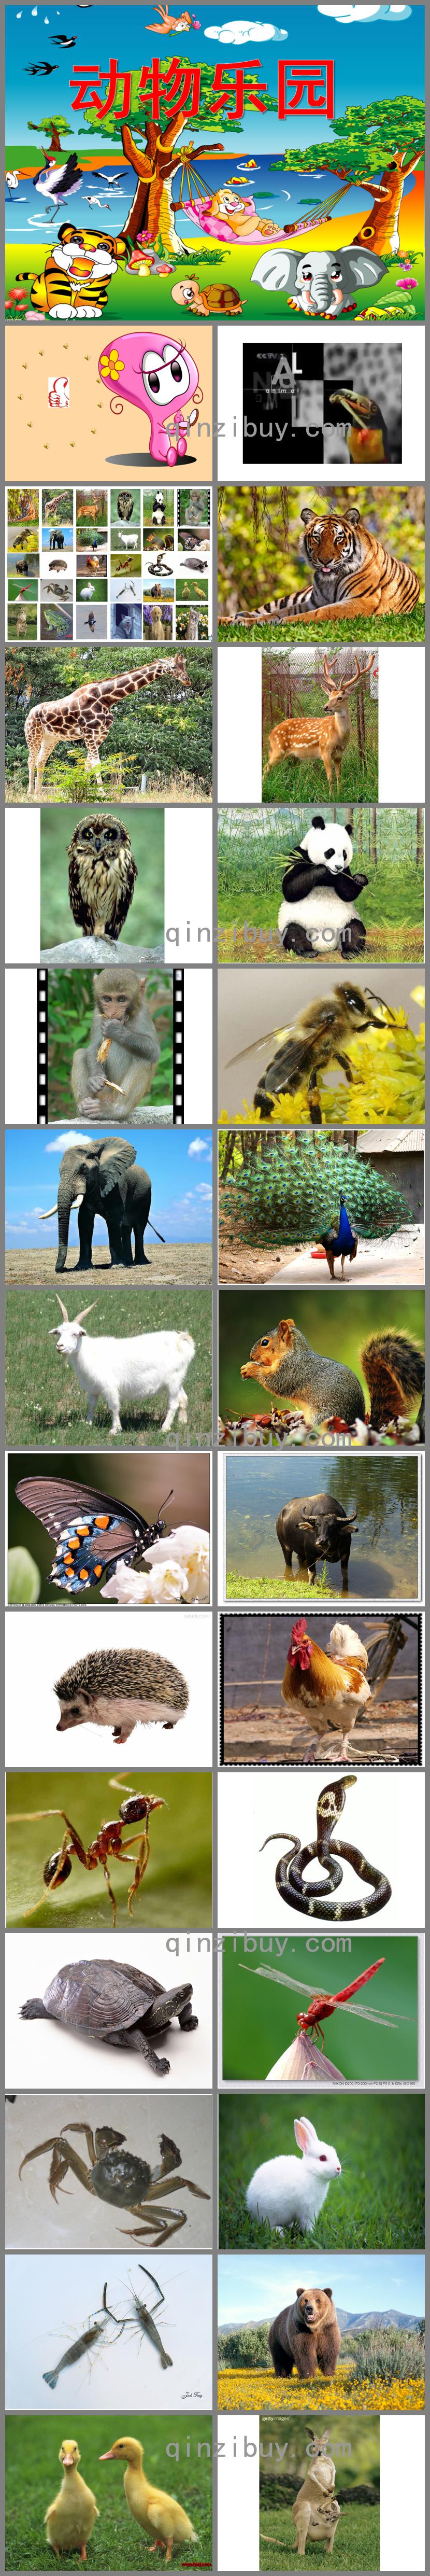 中班主题奇妙的动物世界PPT课件